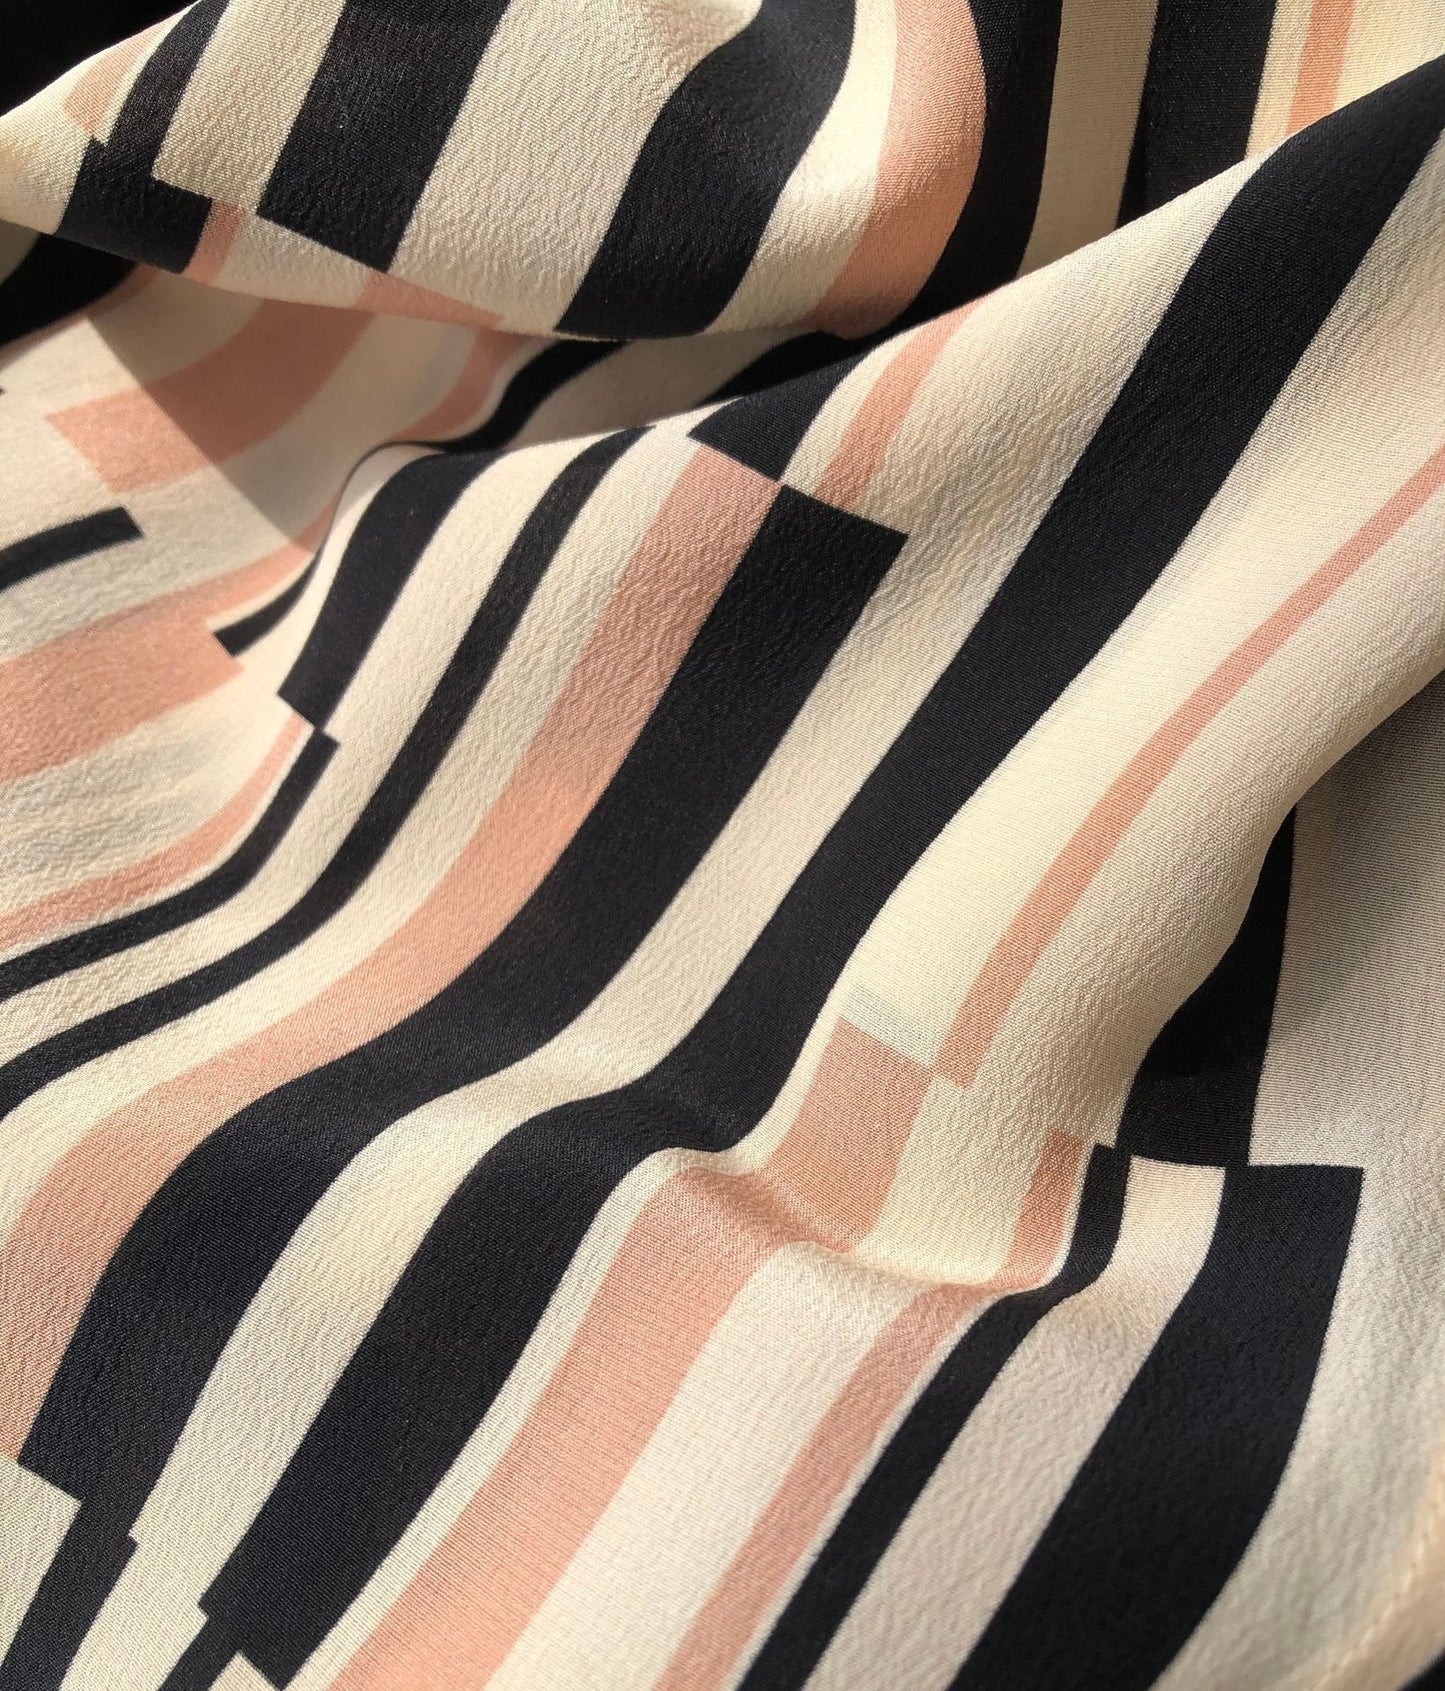 Striped Silk Dress  - by Gioventù